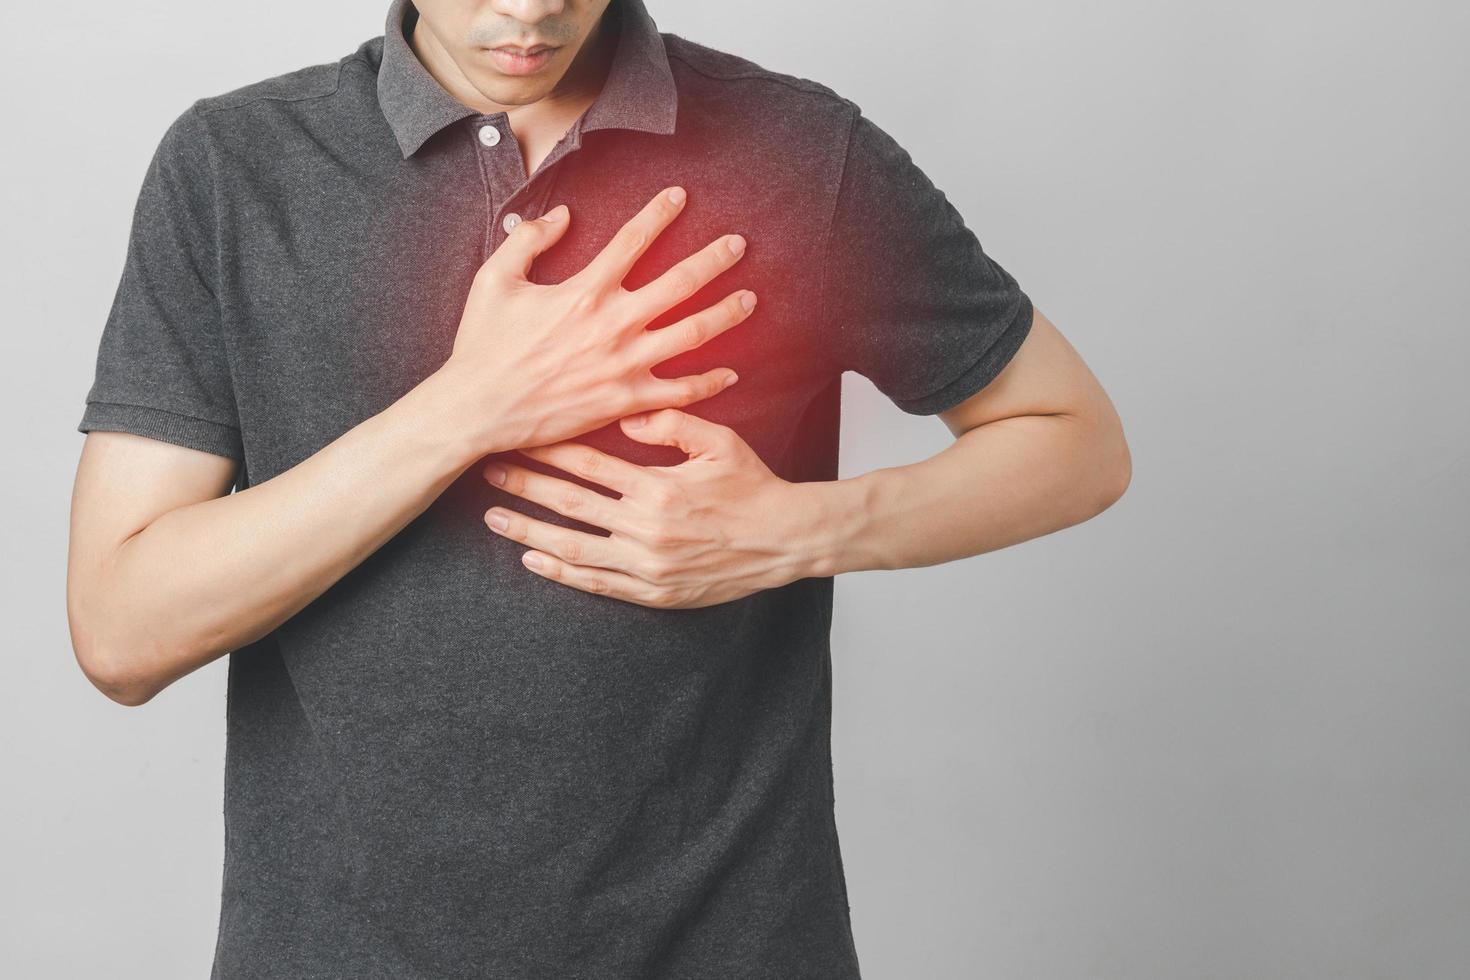 man heeft pijn op de borst die lijdt aan hartaandoeningen, hart- en vaatziekten foto